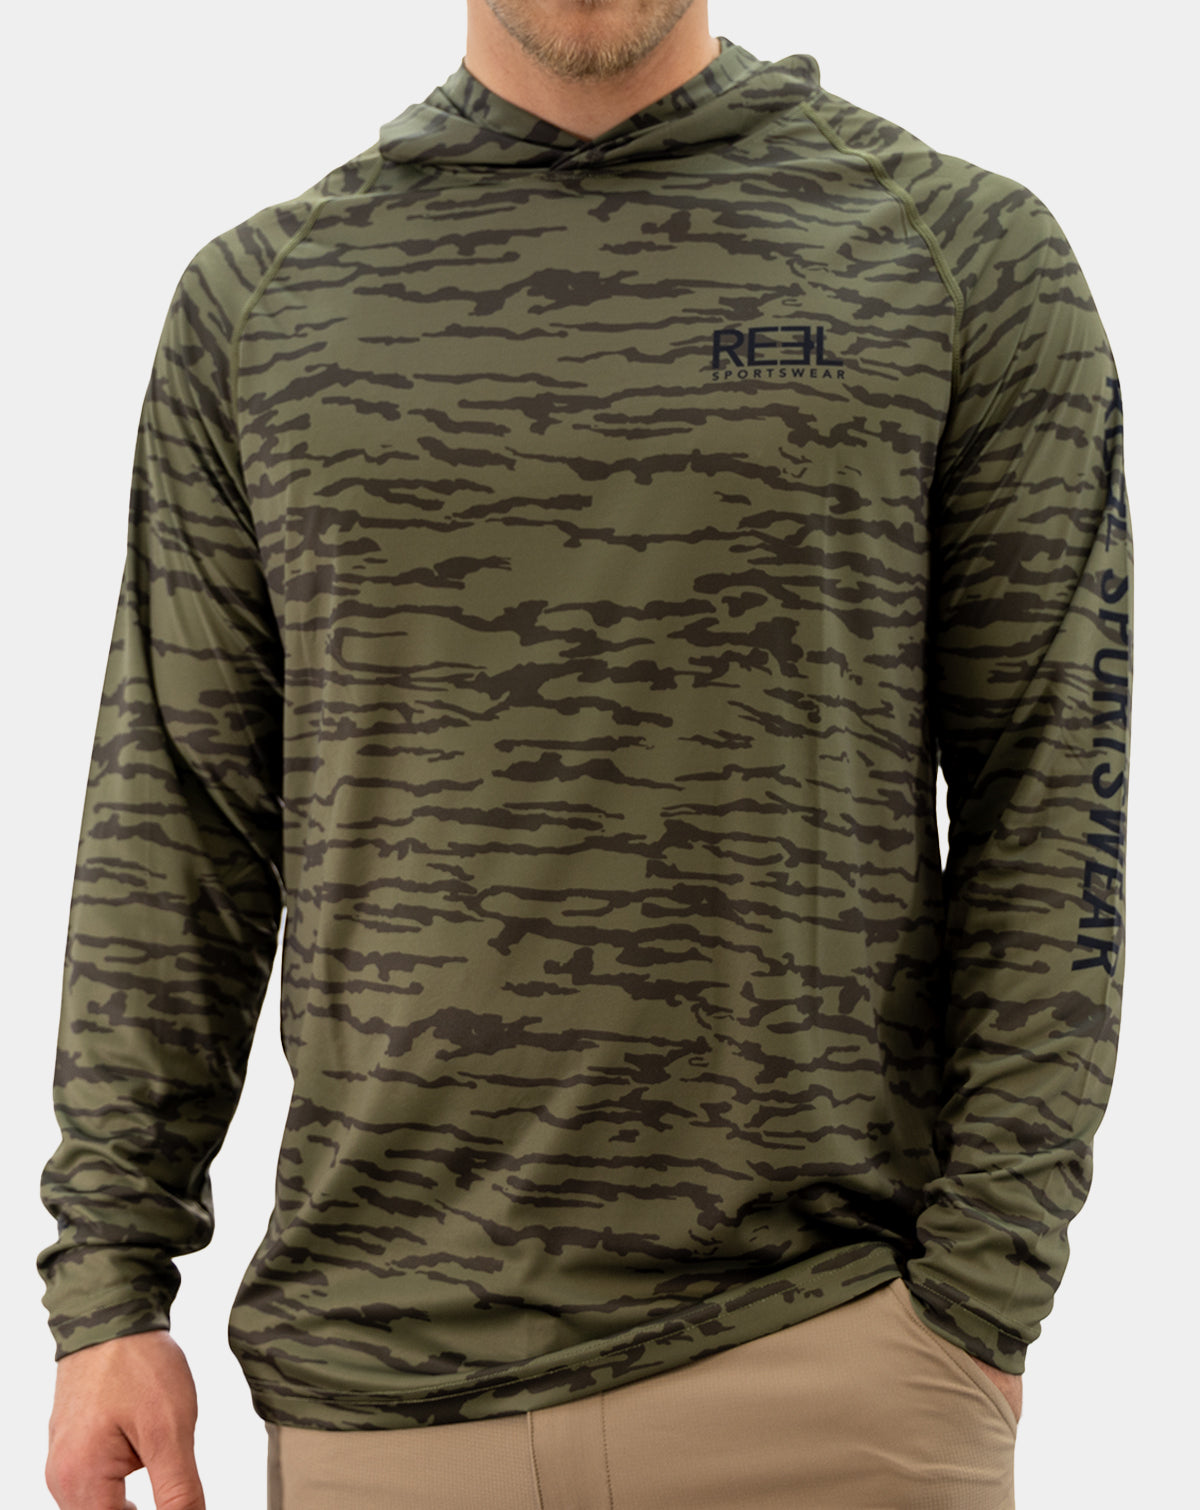 Preserve men&#39;s fishing Hoody long sleeve shirt, Reel Sportswear